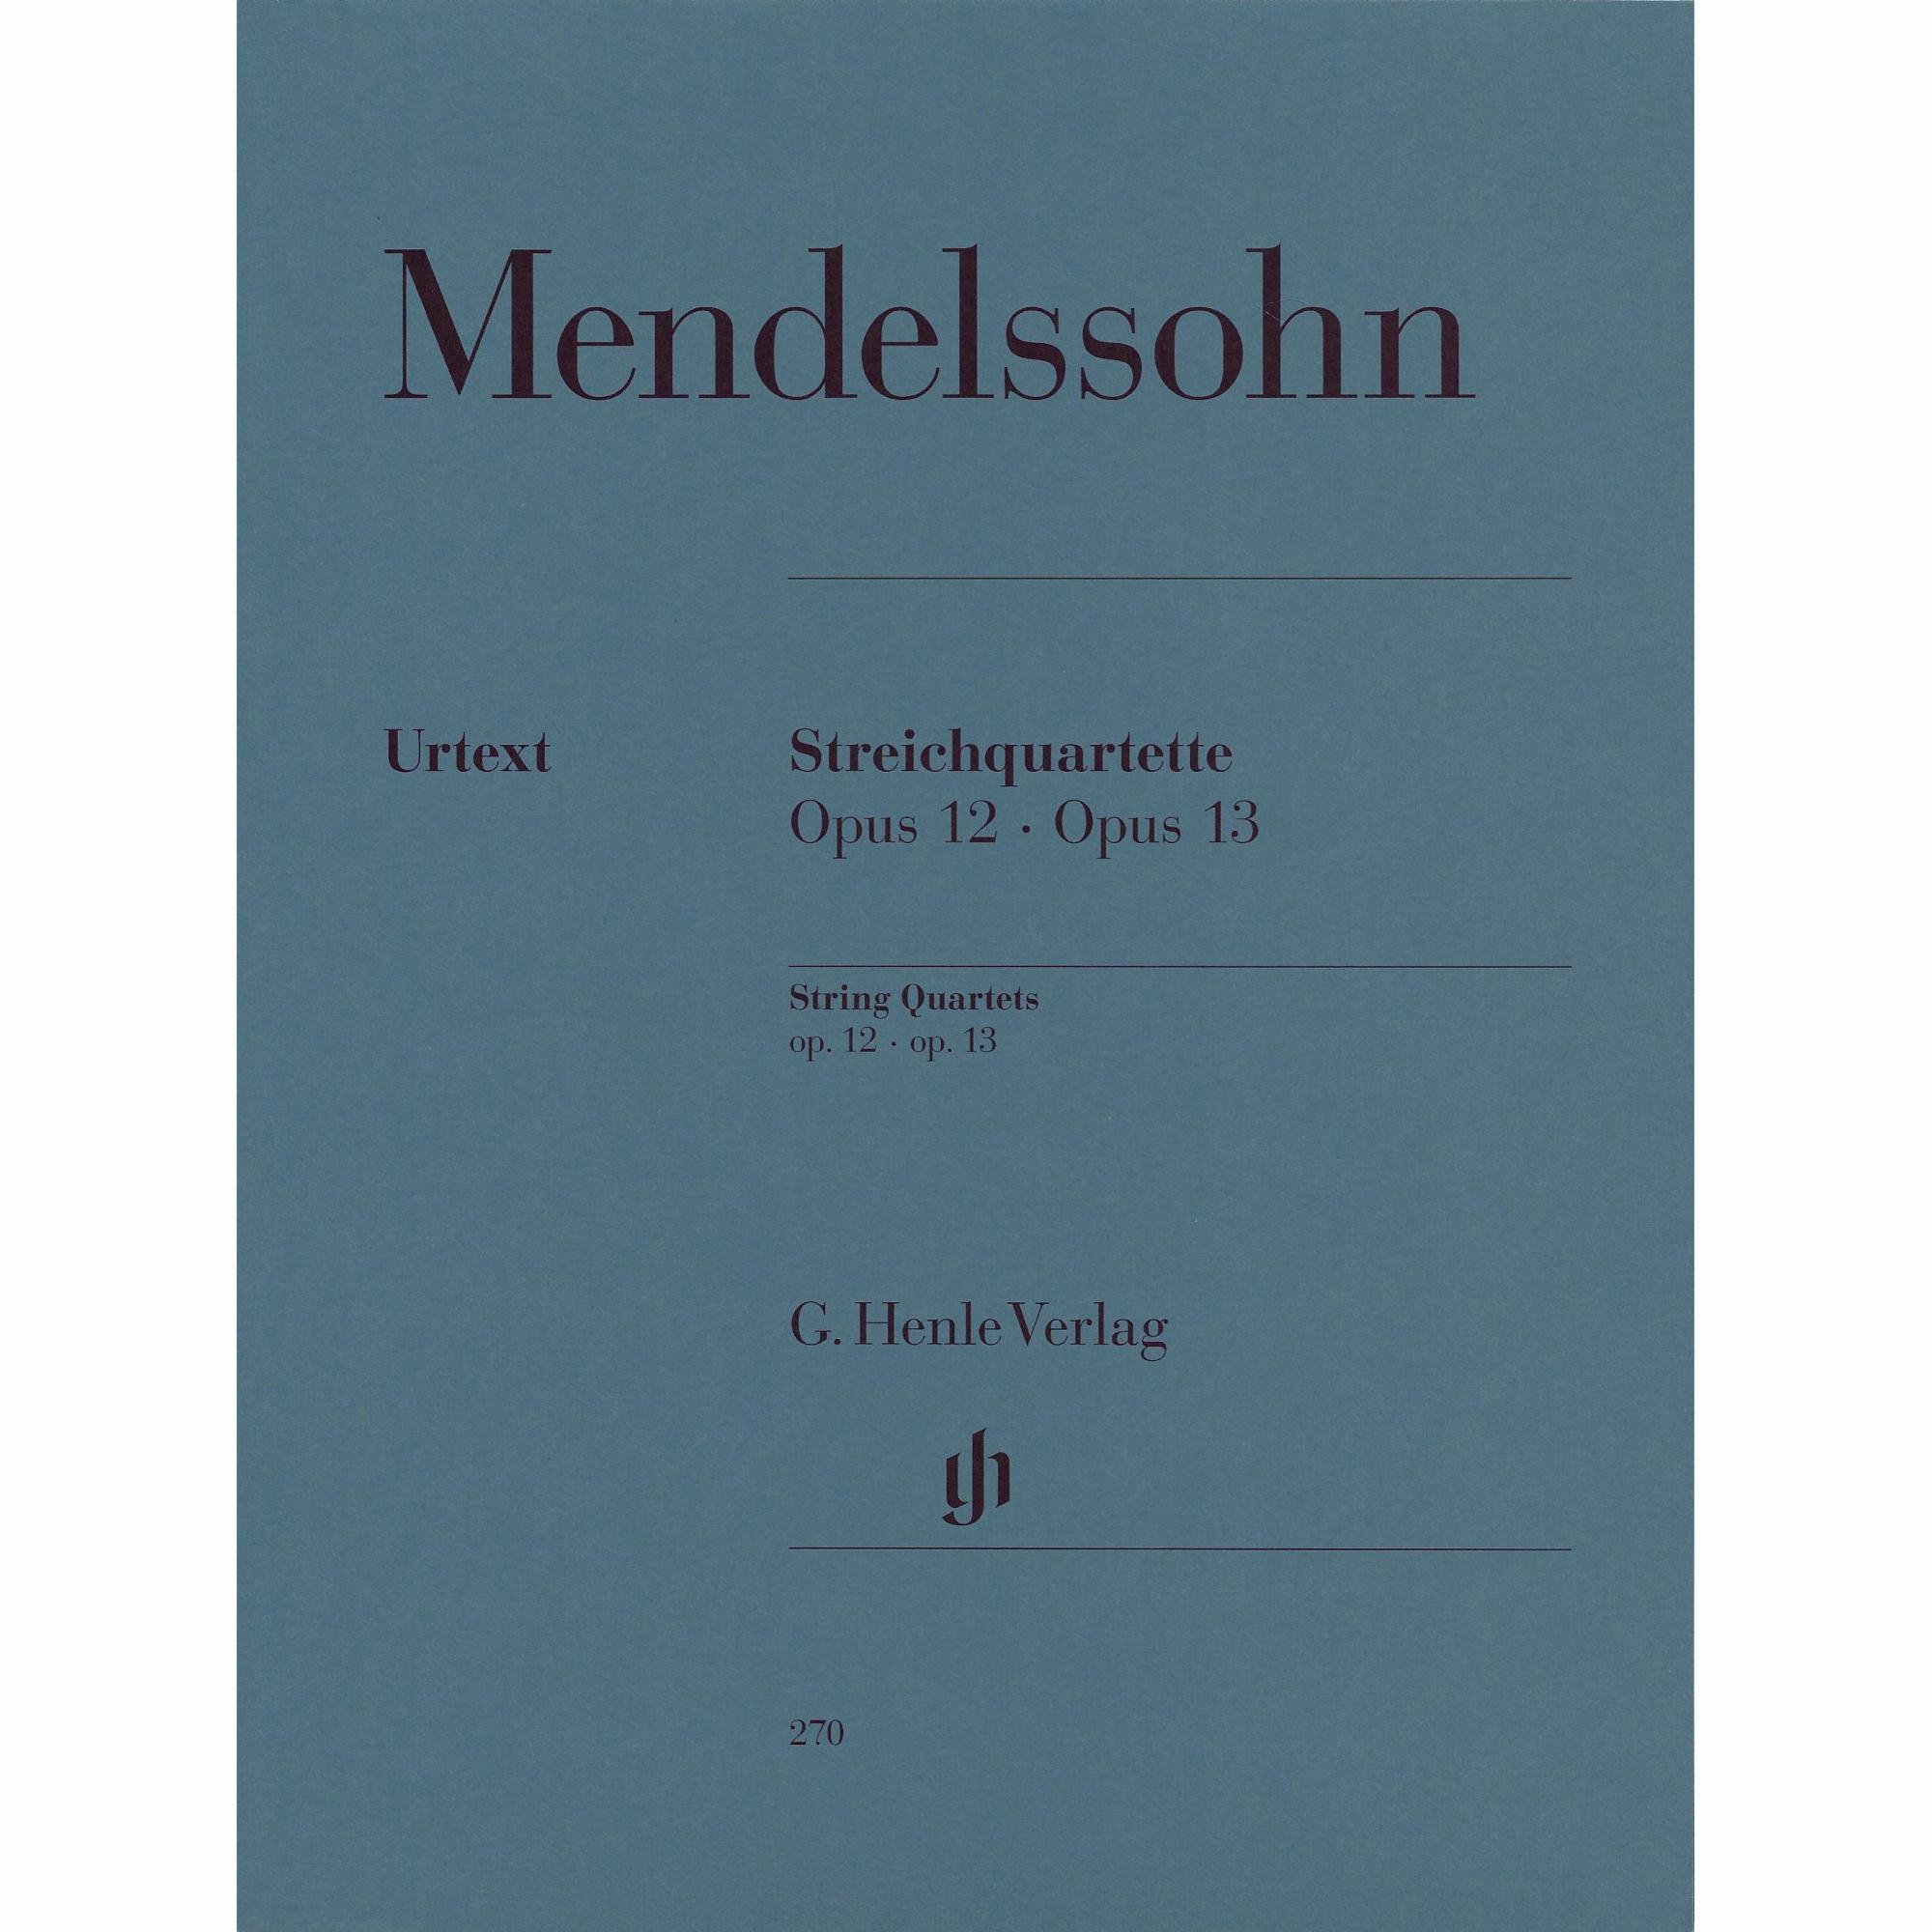 Mendelssohn -- String Quartets, Opp. 12 & 13